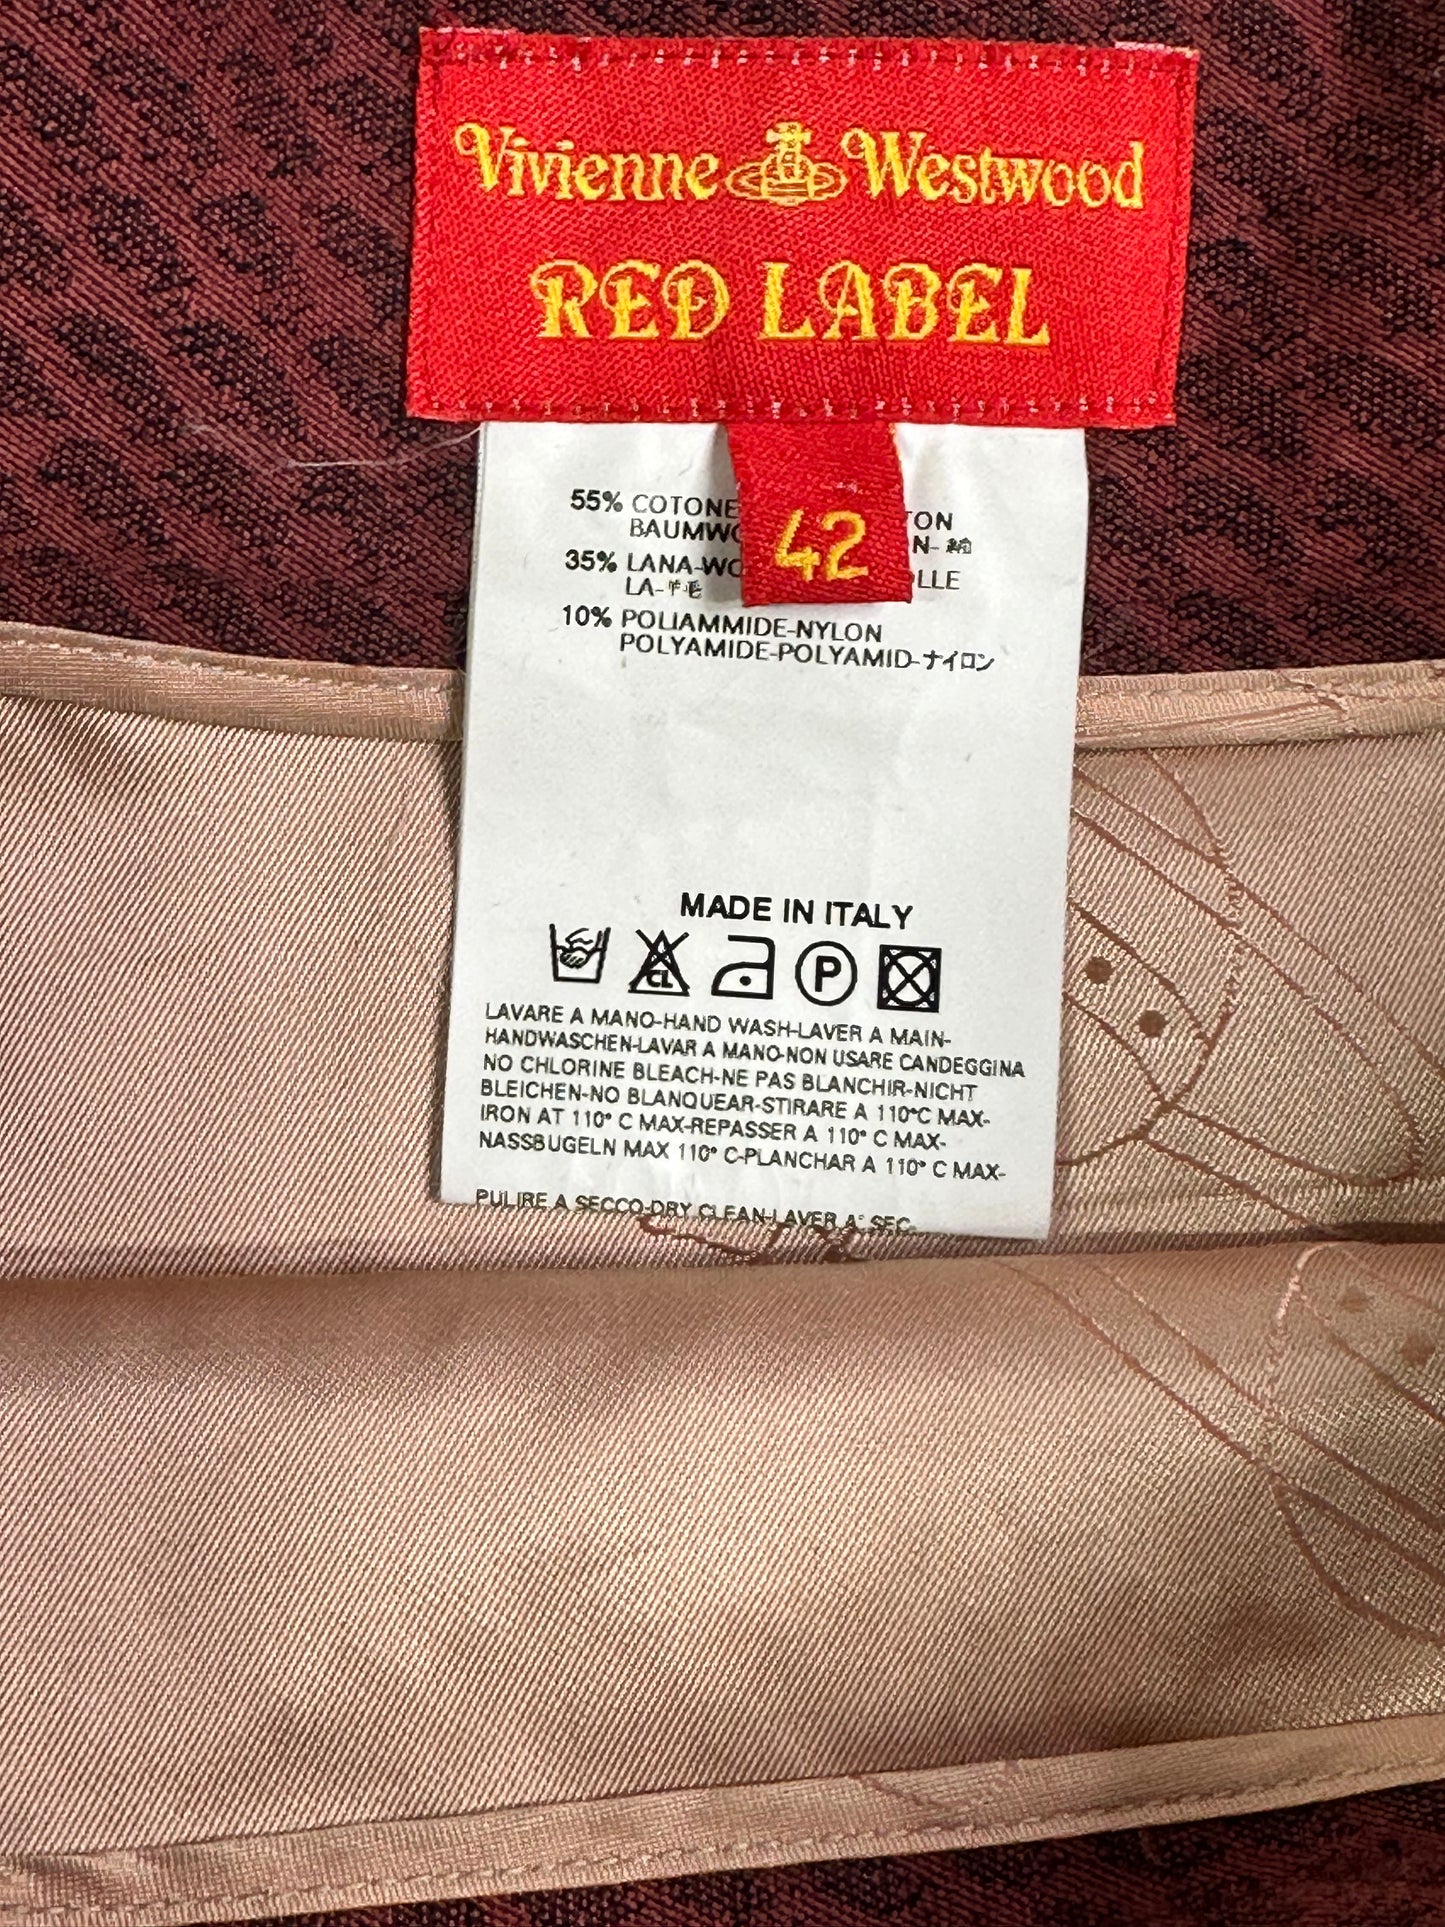 Y2K Vivienne Westwood “Red Label” Highwaisted Hatched Skirt